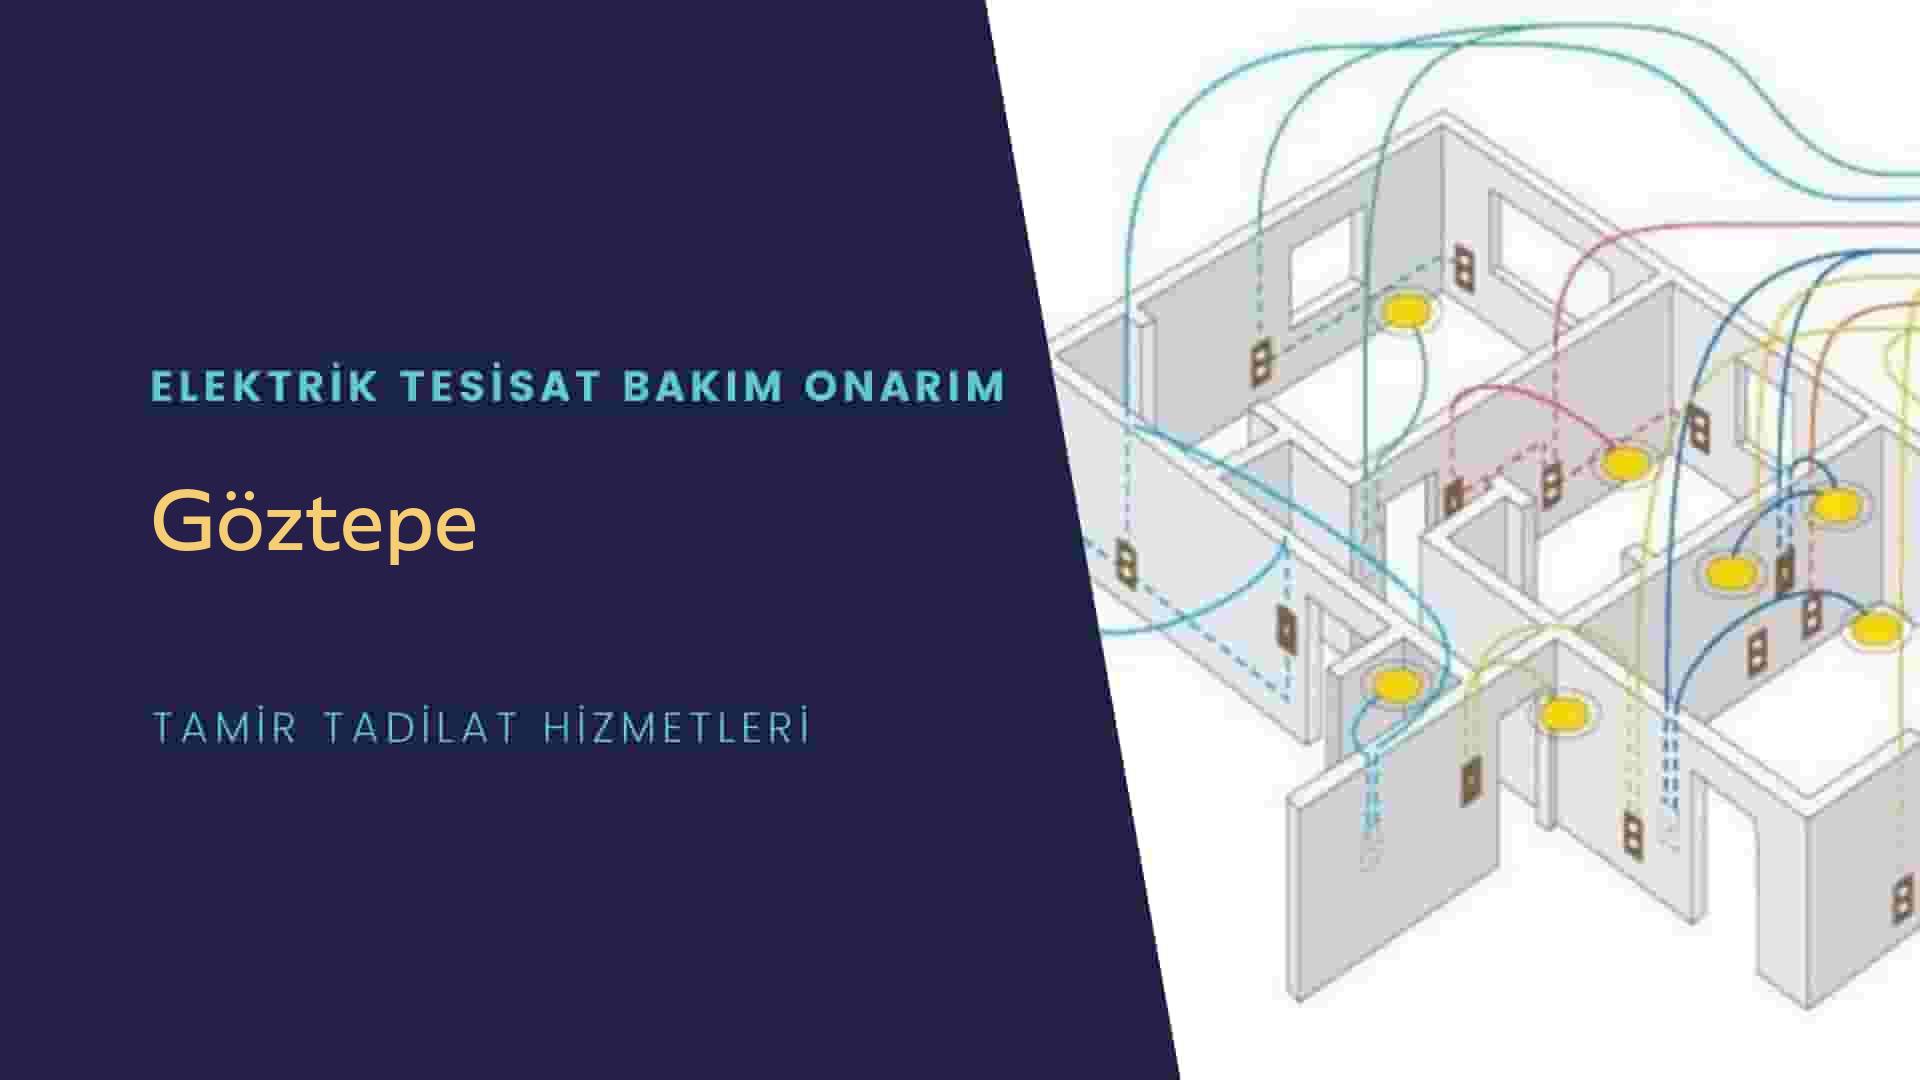 Göztepe'de elektrik tesisatı ustalarımı arıyorsunuz doğru adrestenizi Göztepe elektrik tesisatı ustalarımız 7/24 sizlere hizmet vermekten mutluluk duyar.